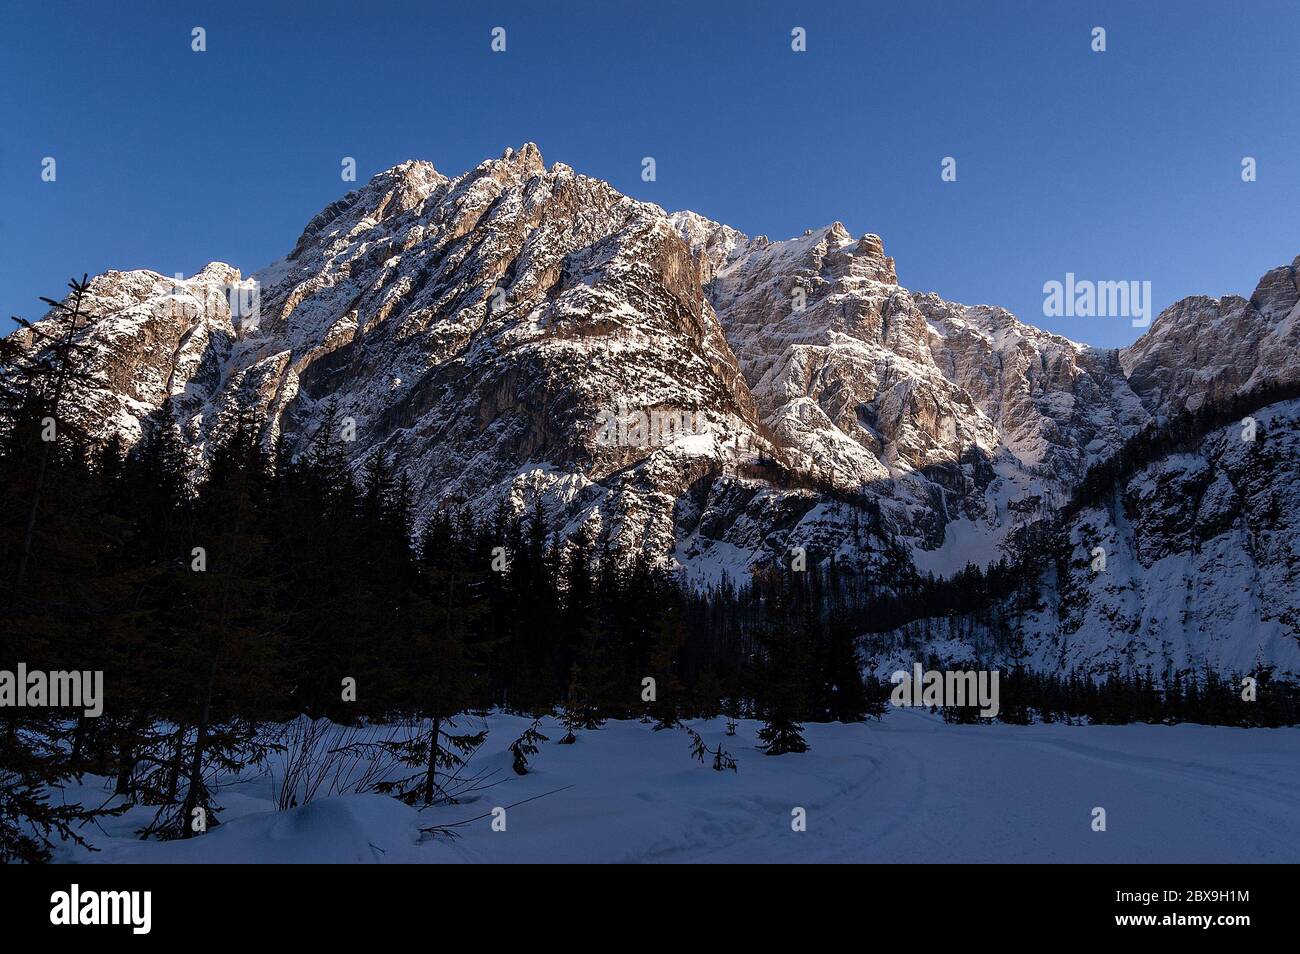 Mont Jod di Montasio. Alpes juliennes en hiver dans la vallée de Saisera (Val Saisera) avec des sommets enneigés et un ciel bleu clair. Tarvisio, Friuli, Italie. Banque D'Images